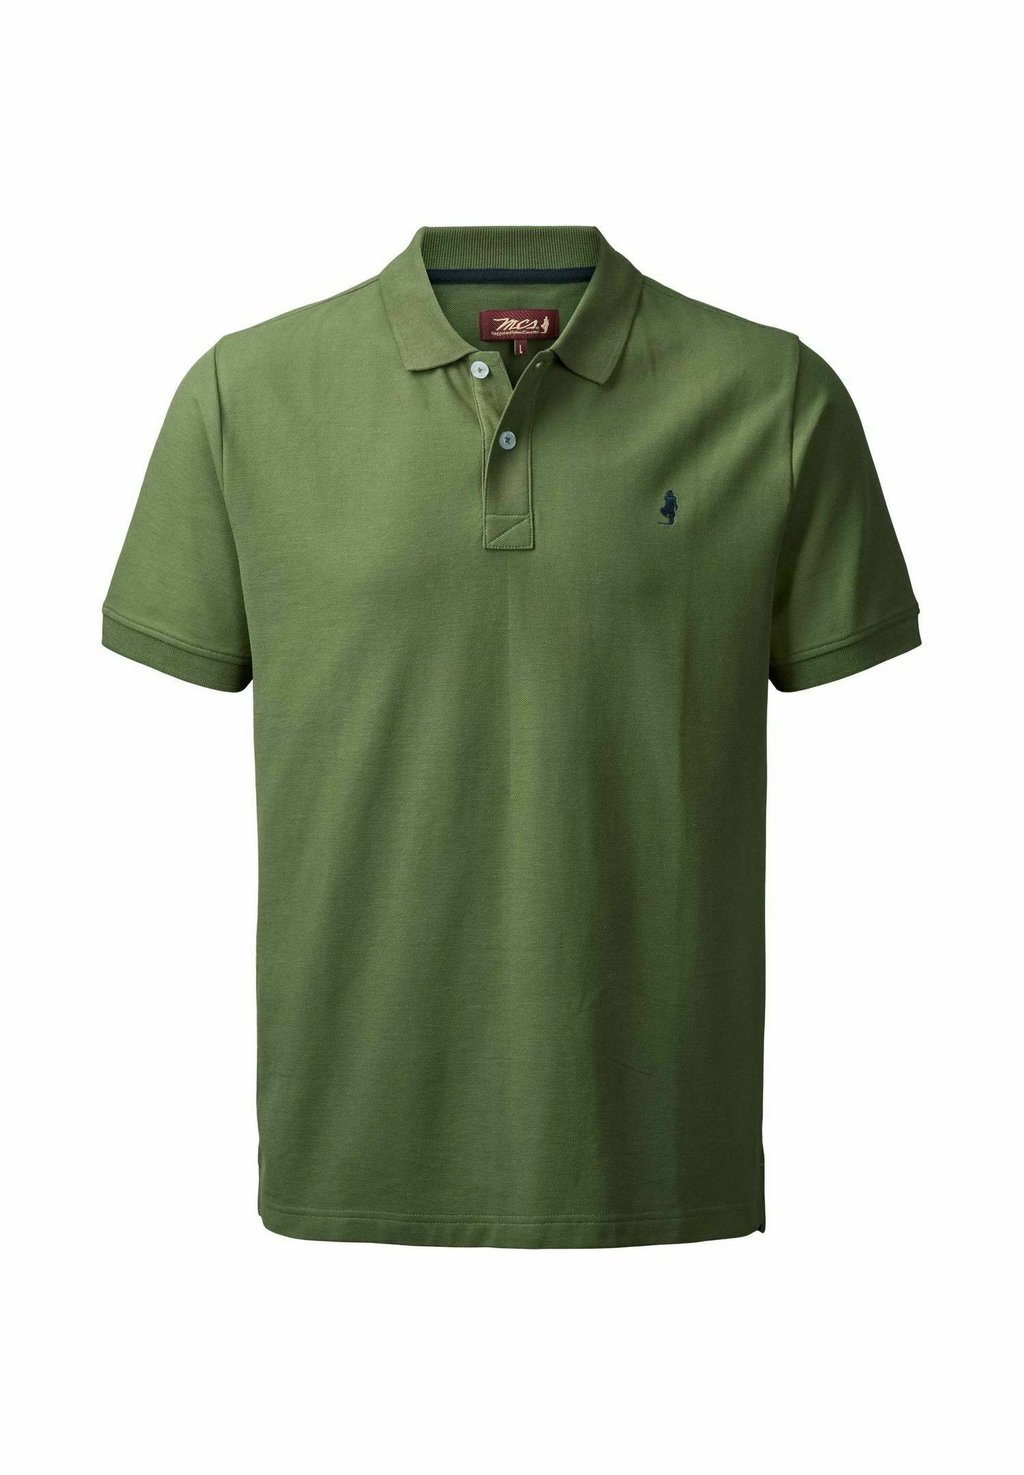 Рубашка-поло HURST MCS, цвет bronze green рубашка поло hurst mcs цвет bronze green